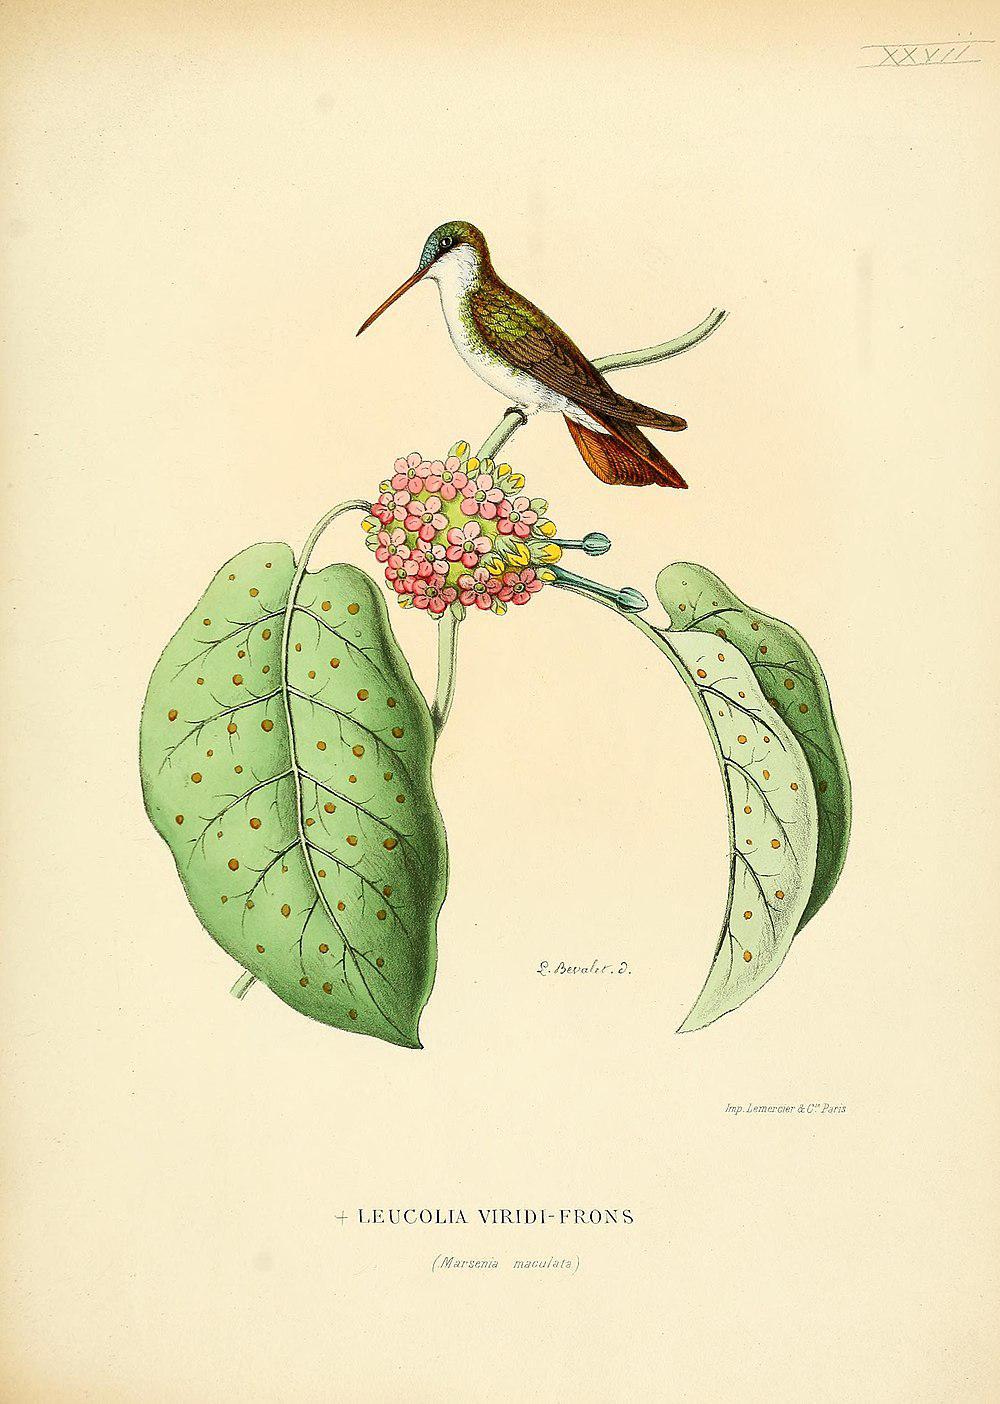 绿额蜂鸟 / Green-fronted Hummingbird / Leucolia viridifrons